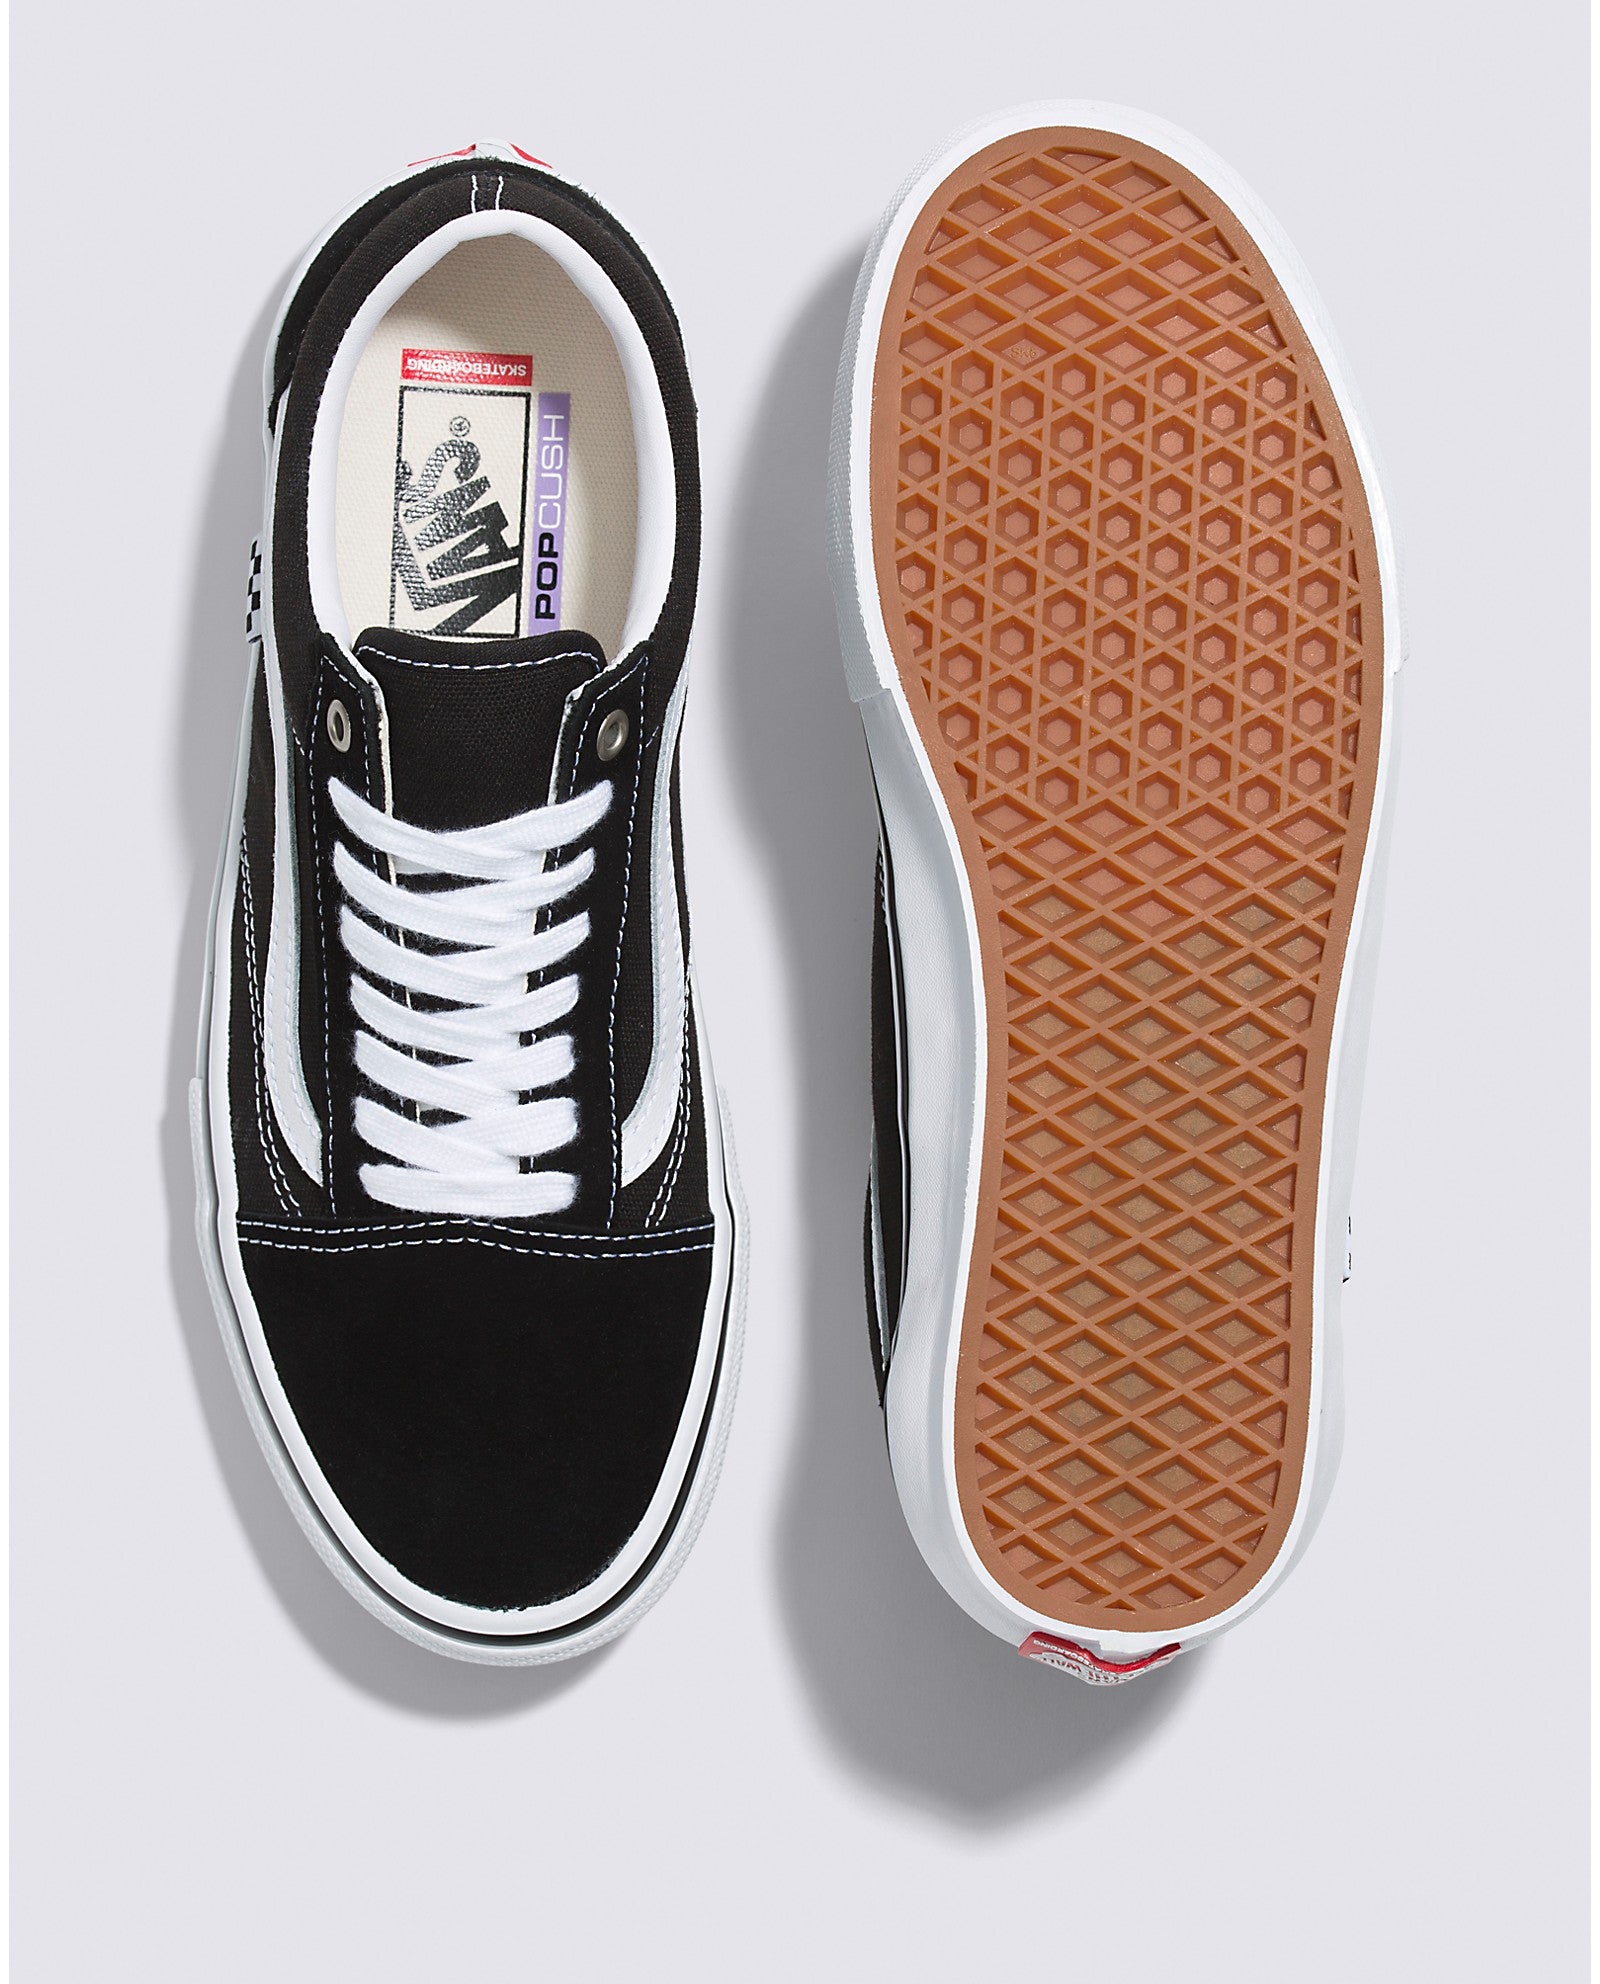 Black/White Skate Old Skool Vans Skateboard Shoe Top/Bottom